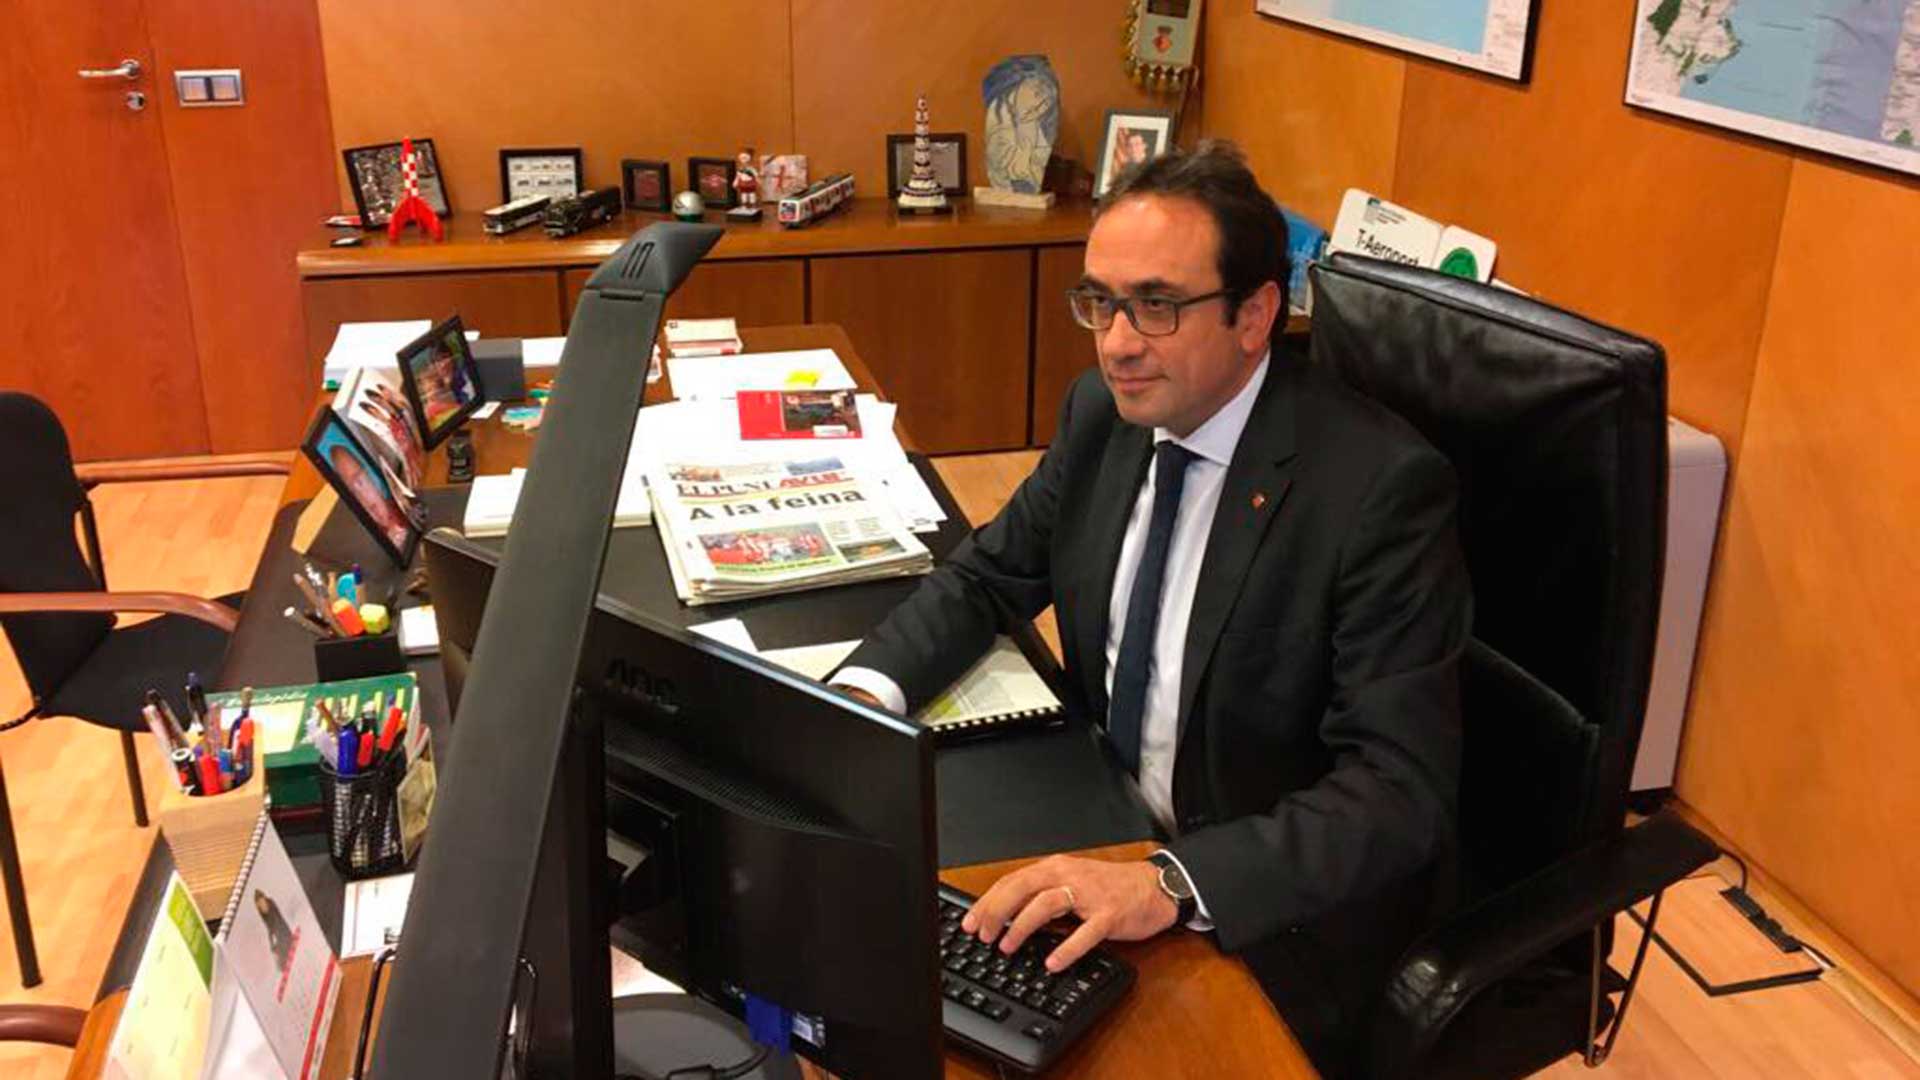 El exconseller Josep Rull desobedece el 155 y acude a su despacho a trabajar